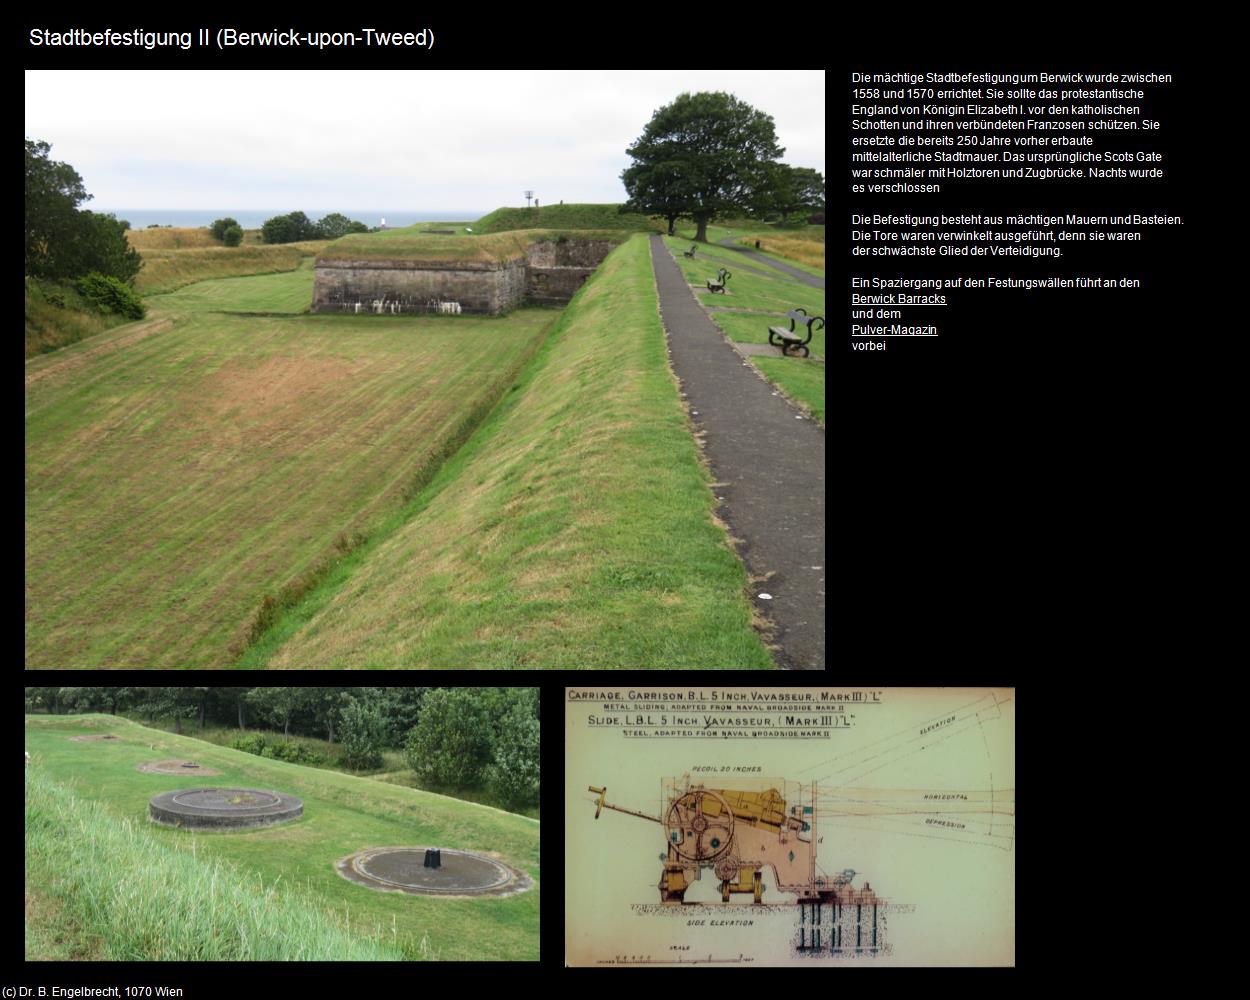 Stadtbefestigung II (Berwick-upon-Tweed, England) in Kulturatlas-ENGLAND und WALES(c)B.Engelbrecht